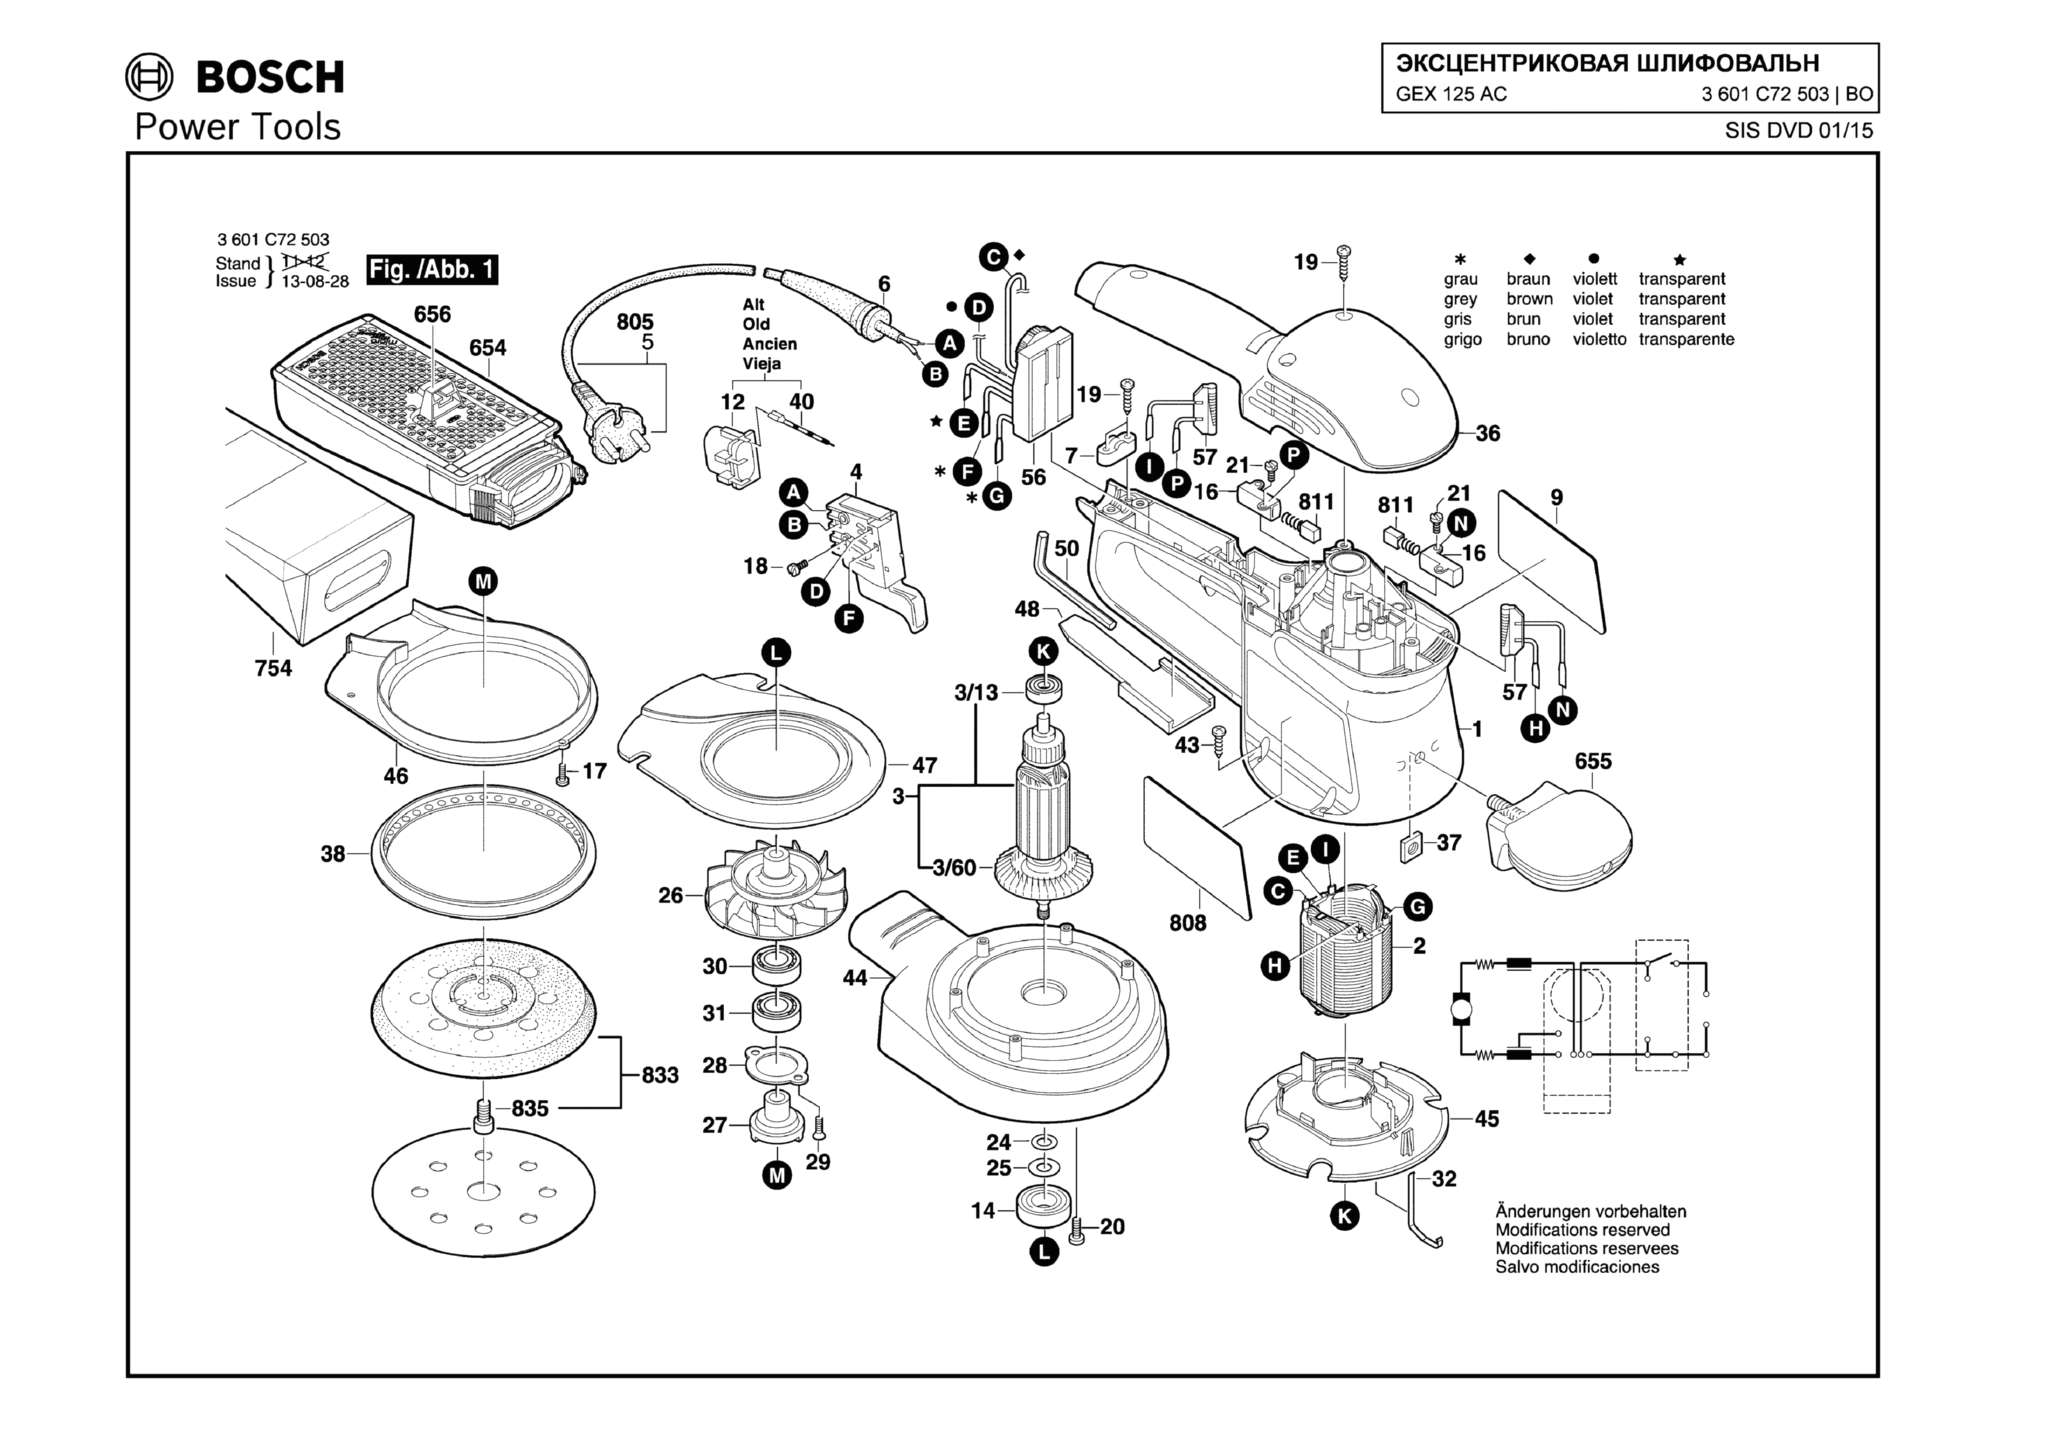 Запчасти, схема и деталировка Bosch GEX 125 AC (ТИП 3601C72503)